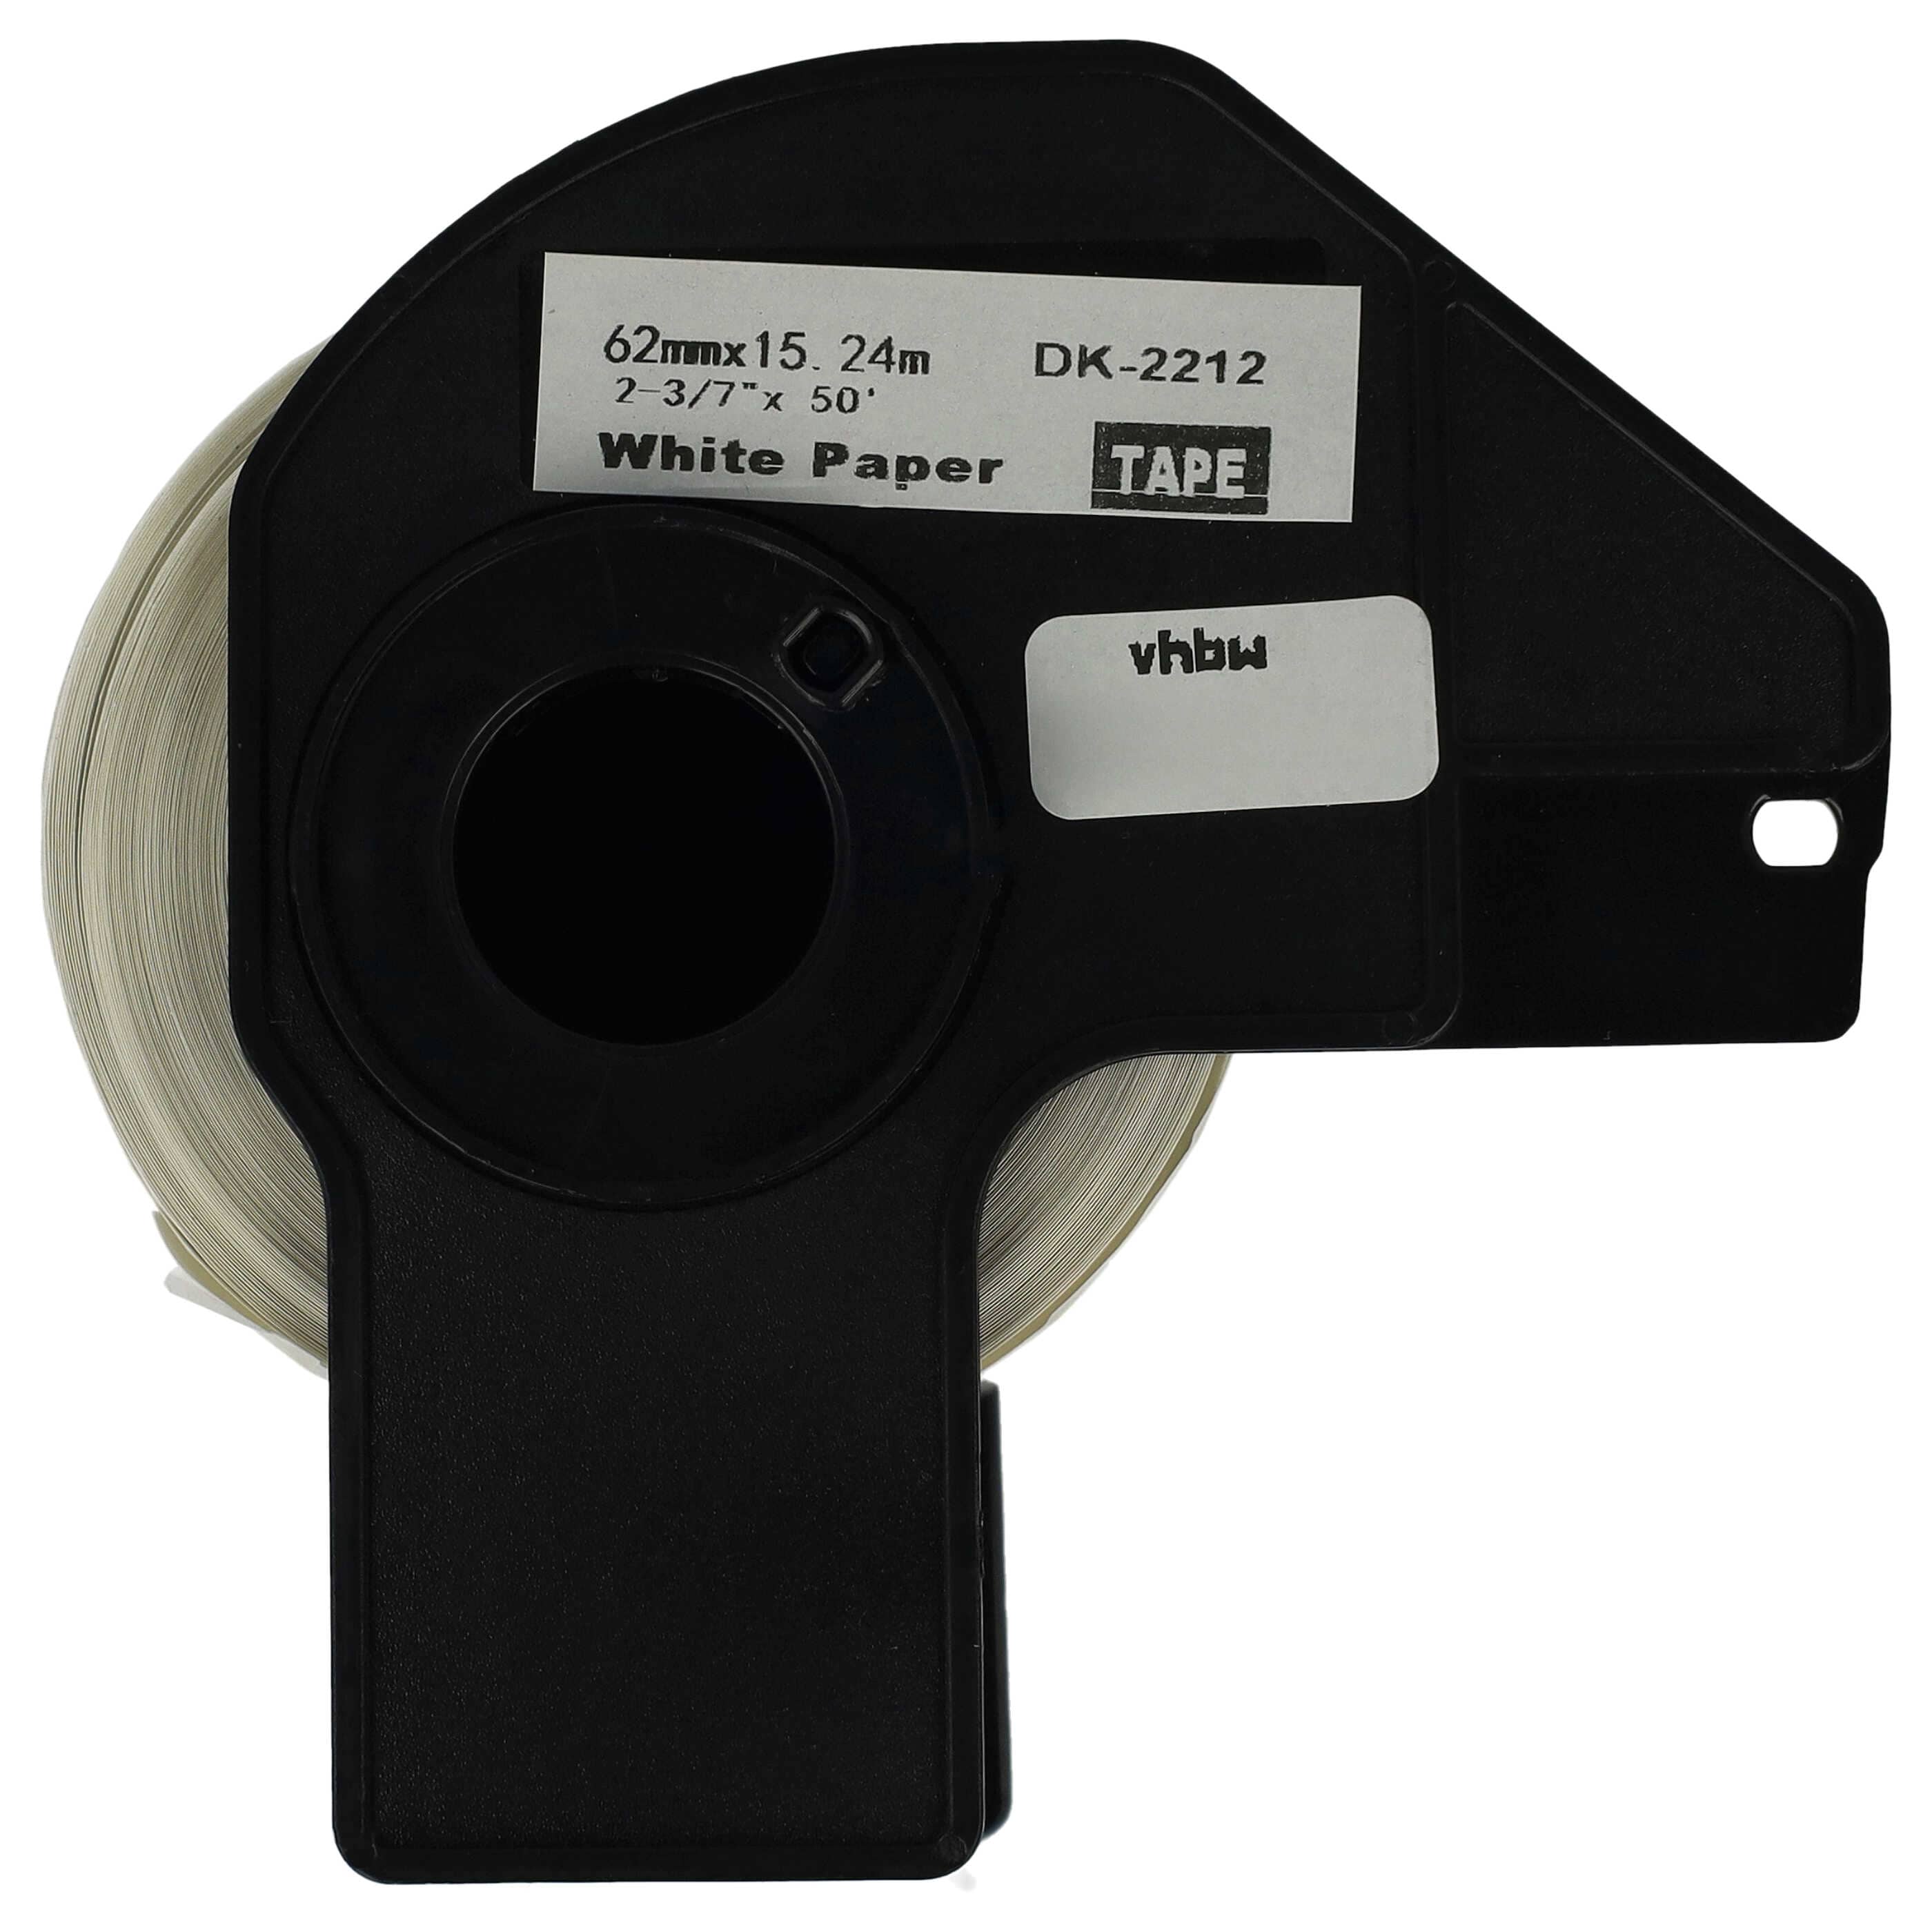 Rotolo etichette sostituisce Brother DK-22212 per etichettatrice - Premium 62mm x 15,24m + supporto